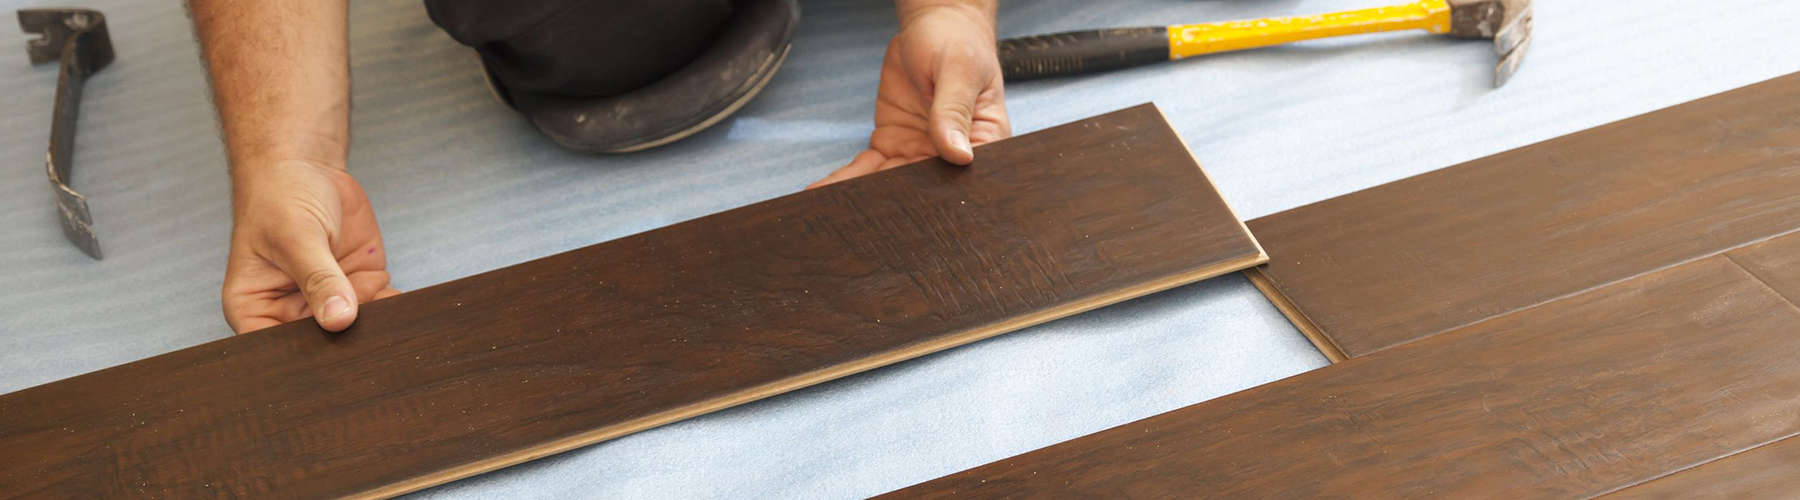 How To Install Vinyl Plank Flooring, Installing A Floating Vinyl Floor